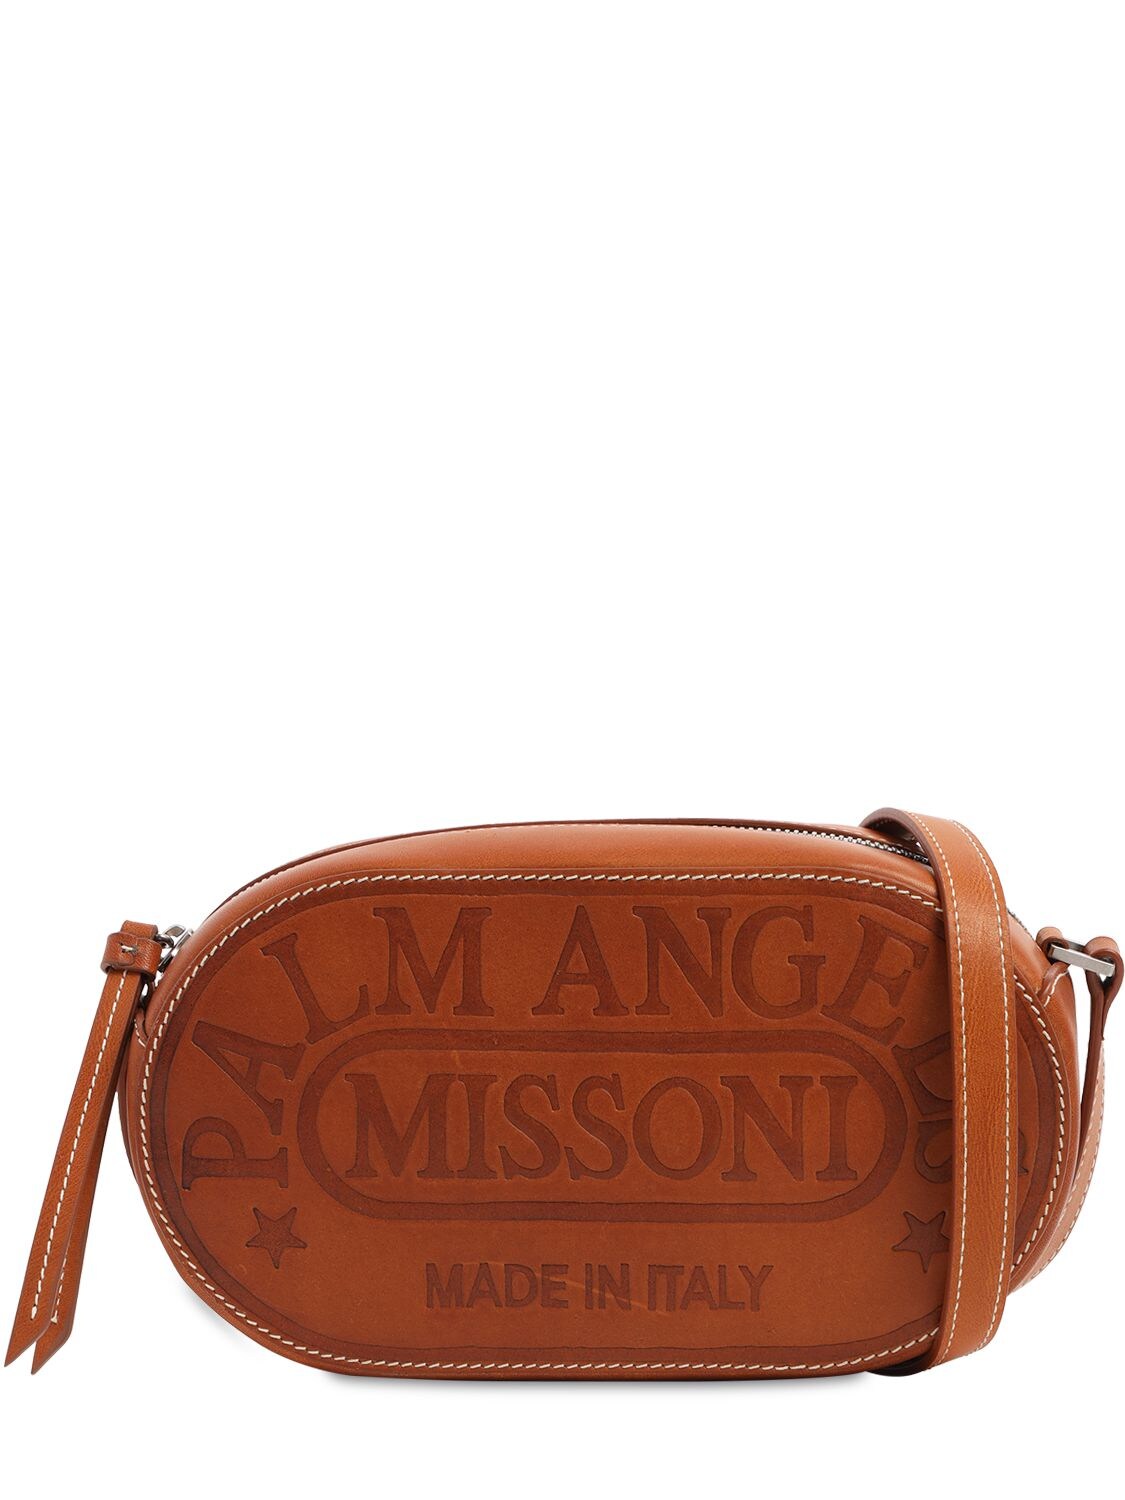 Palm Angels & Missoni Camera Bag